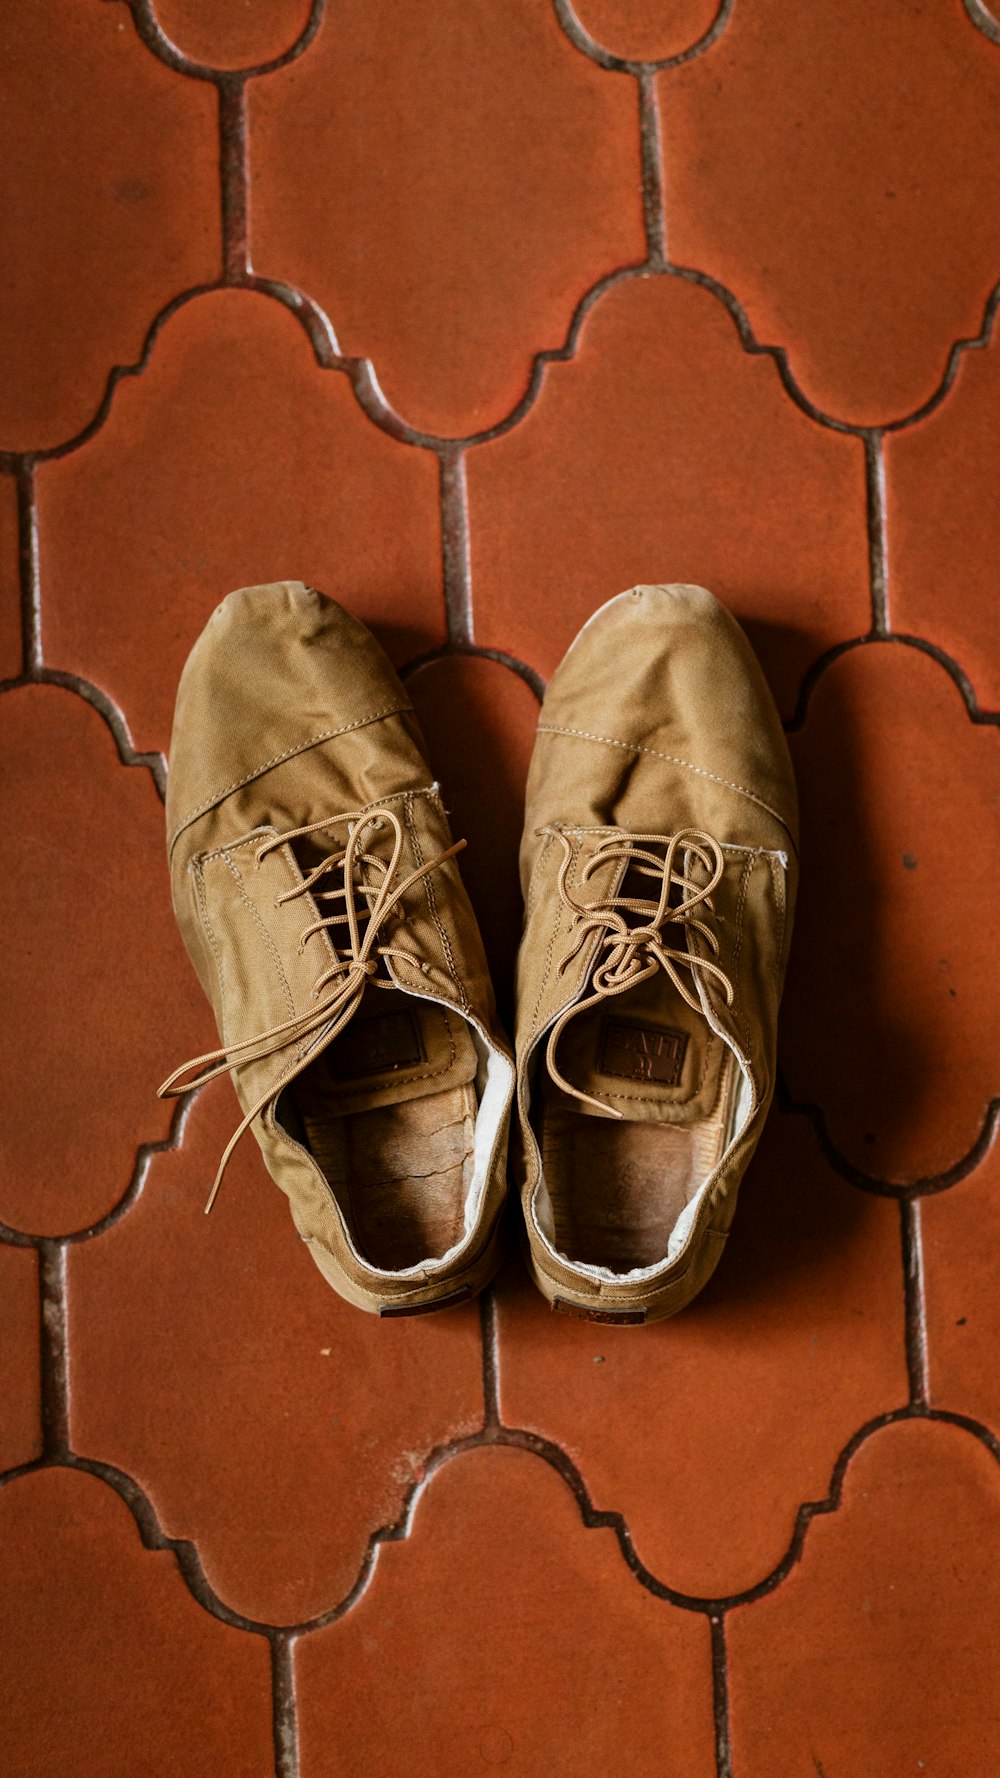 Par de zapatillas bajas de gamuza marrón sobre superficie marrón